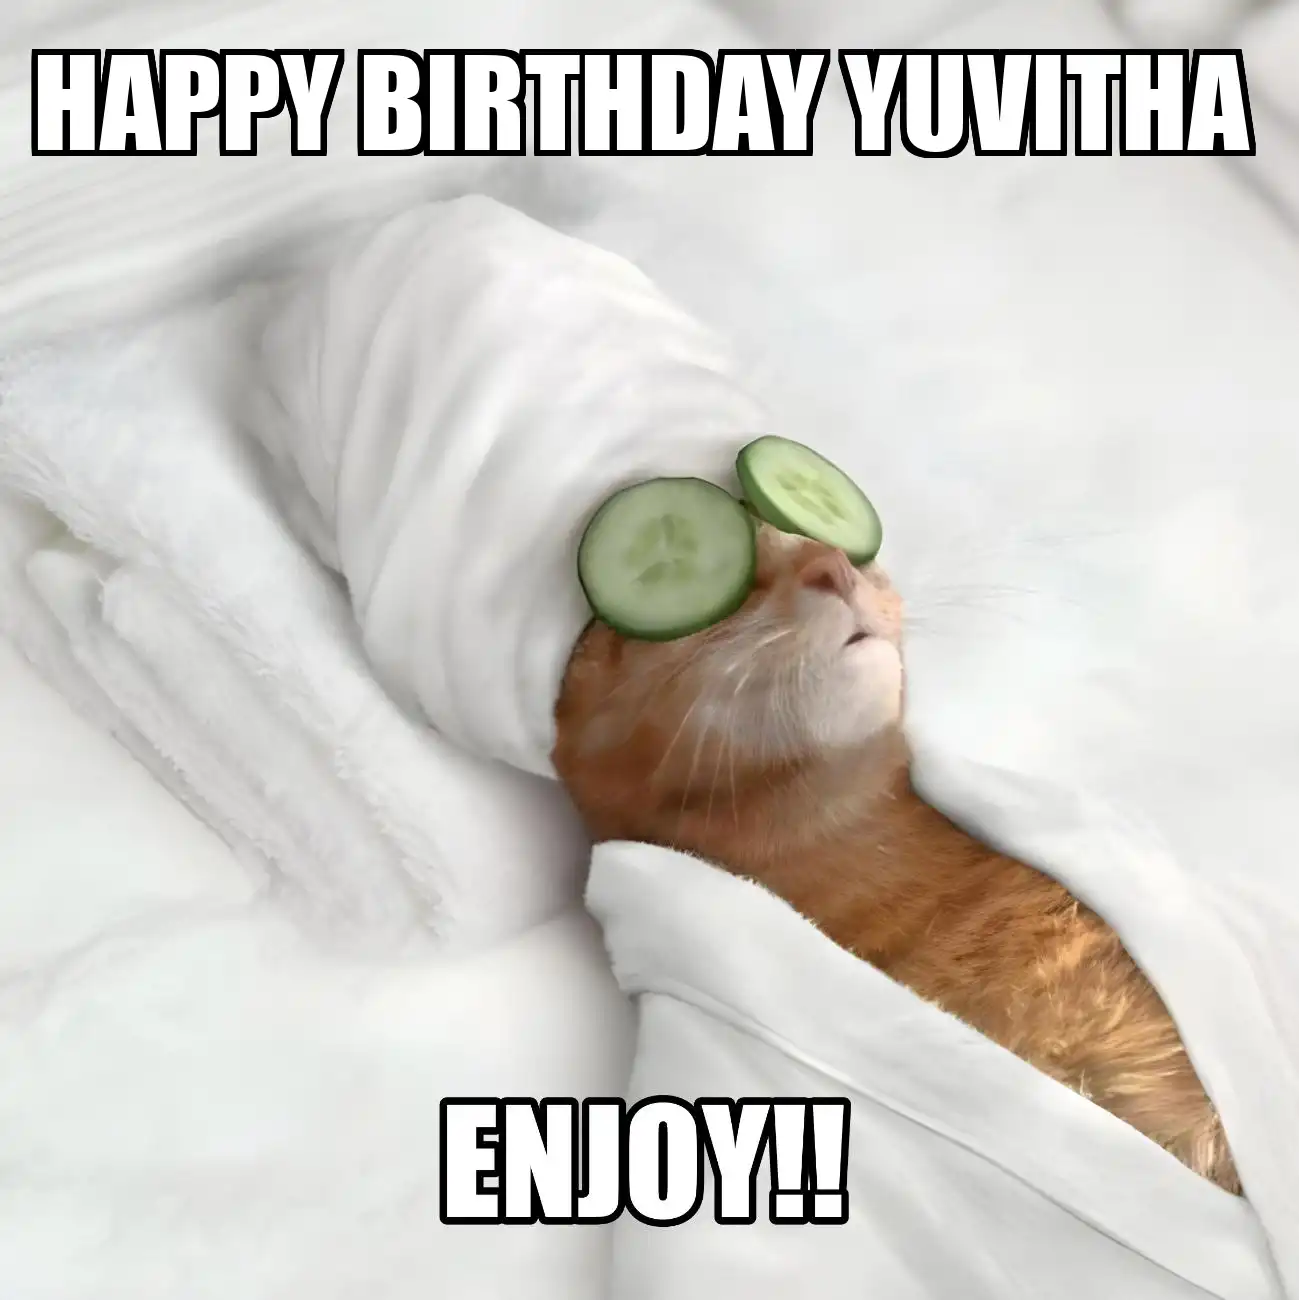 Happy Birthday Yuvitha Enjoy Cat Meme